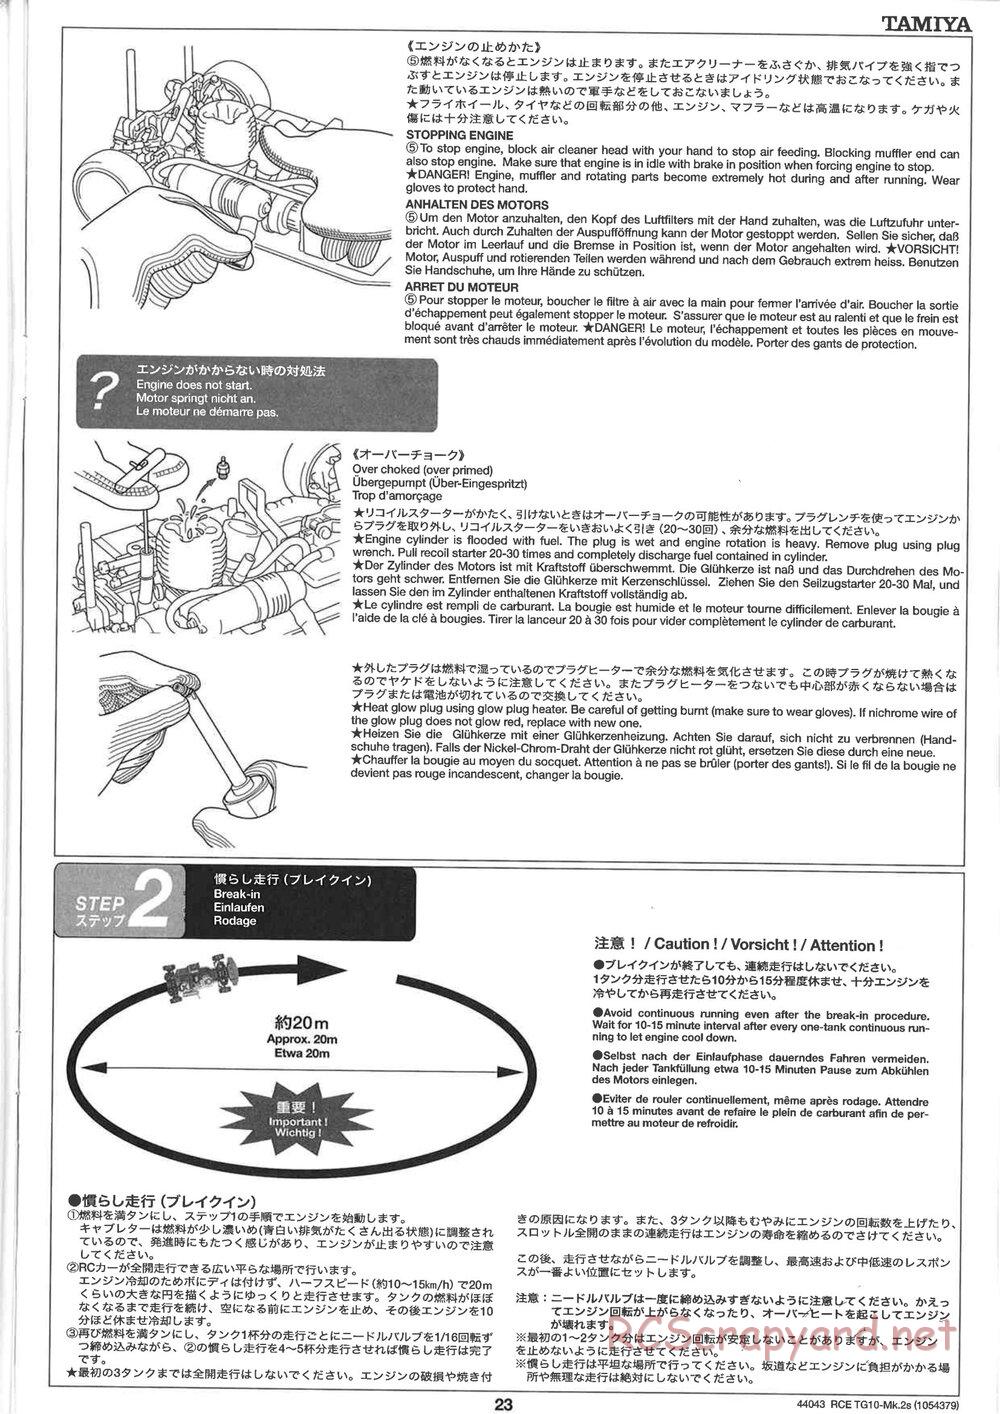 Tamiya - TG10 Mk.2s Chassis - Manual - Page 24